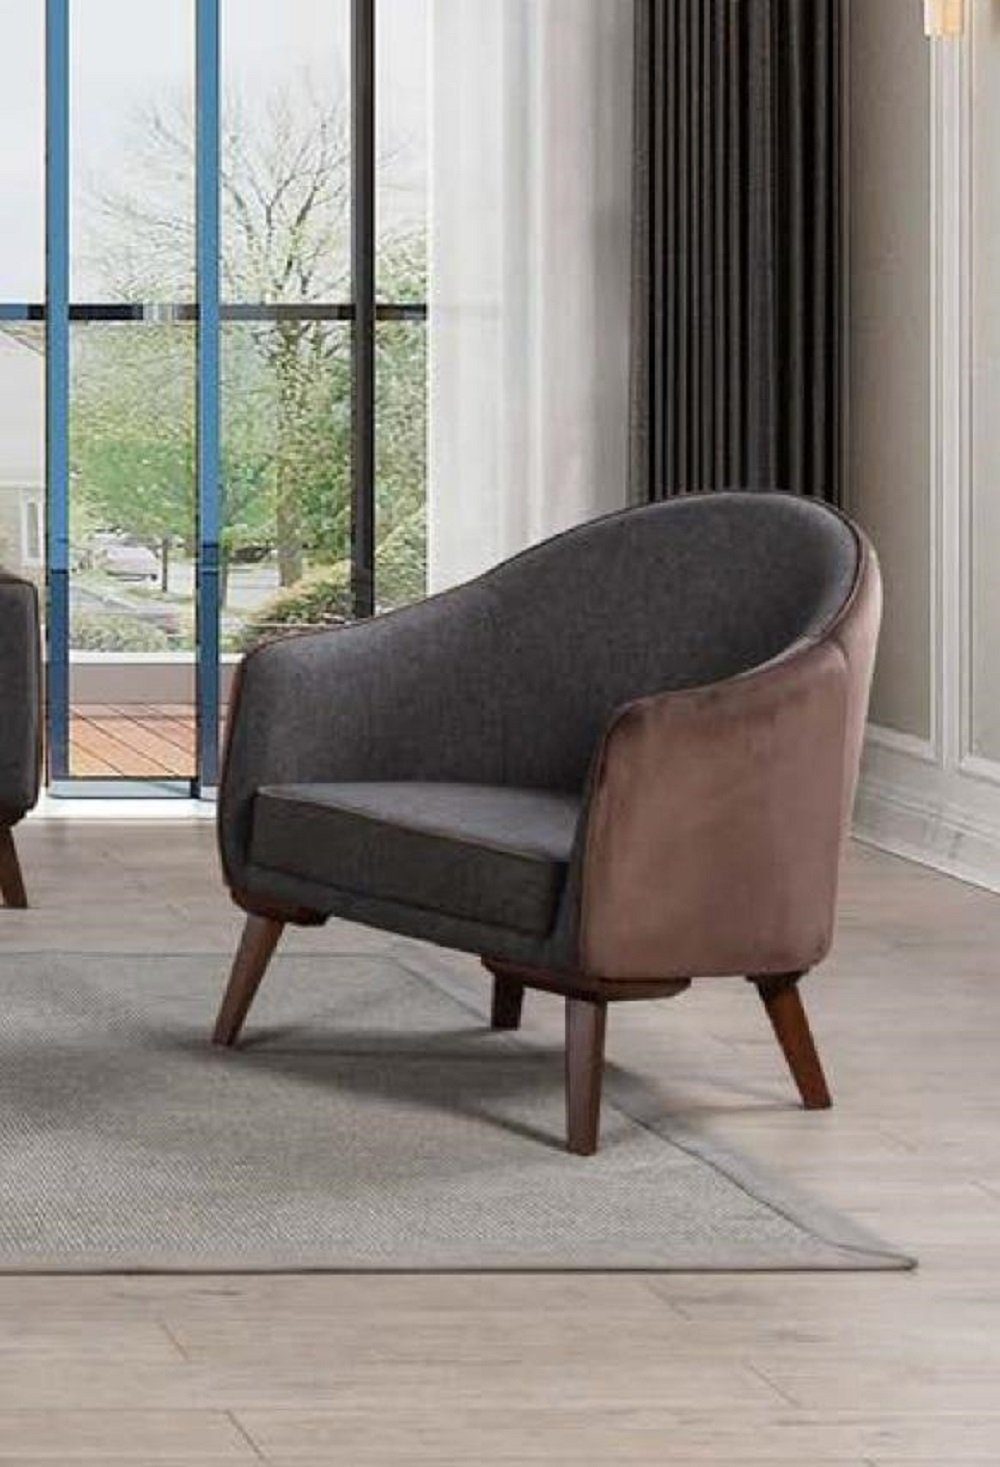 JVmoebel Sessel 1 Sitzer Sessel Grau Einsitzer Wohnzimmer Textil Design Luxus Stil Neu